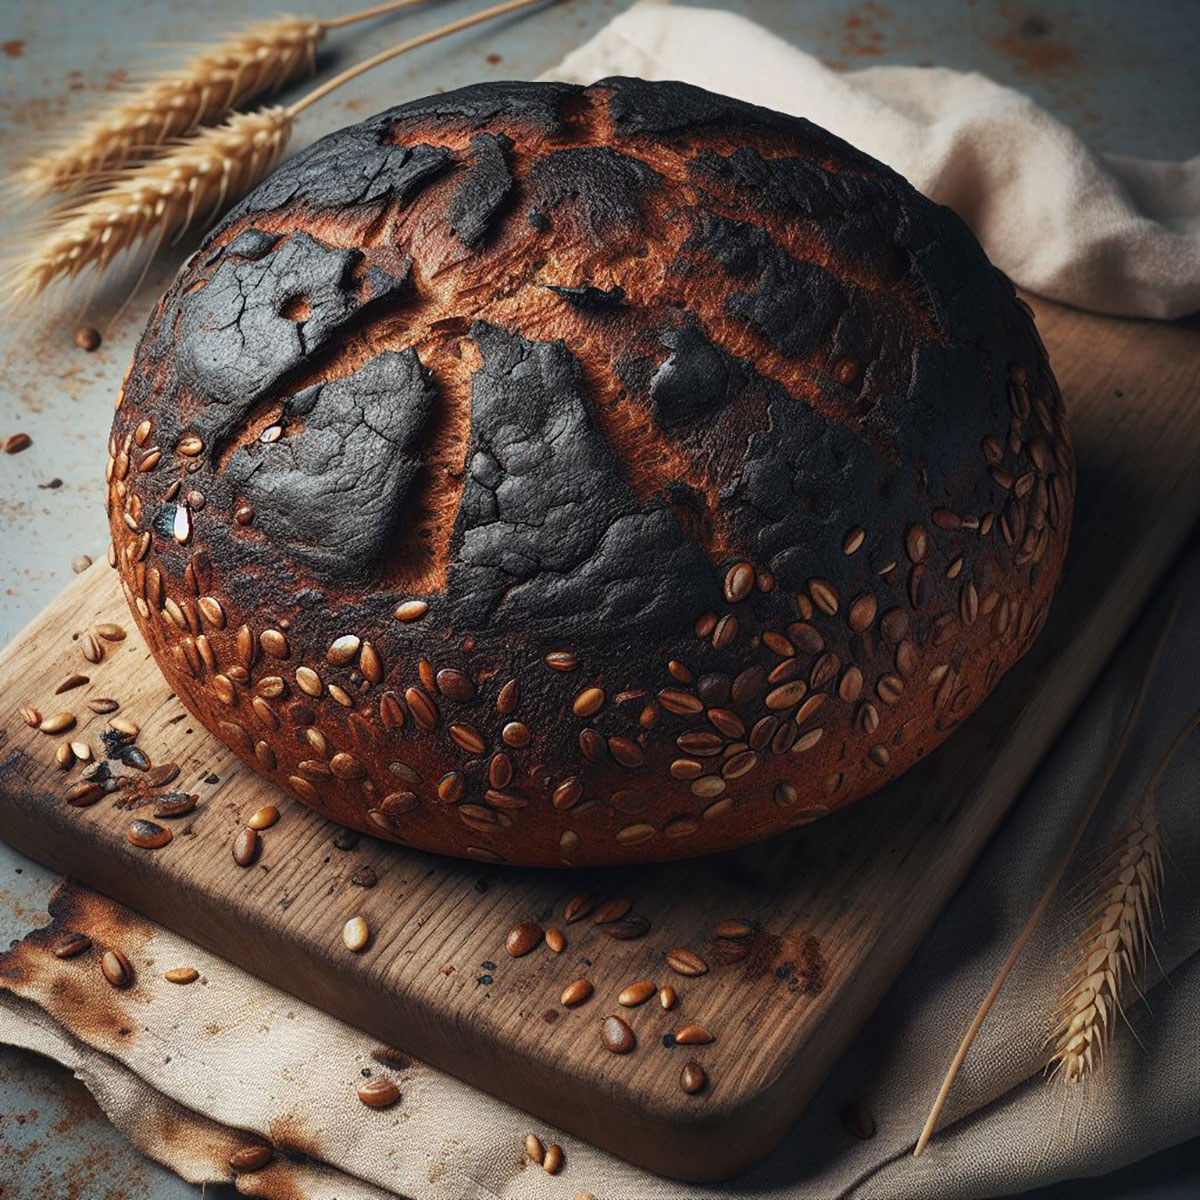 Fehler beim Brot backen - Zu dunkle Kruste